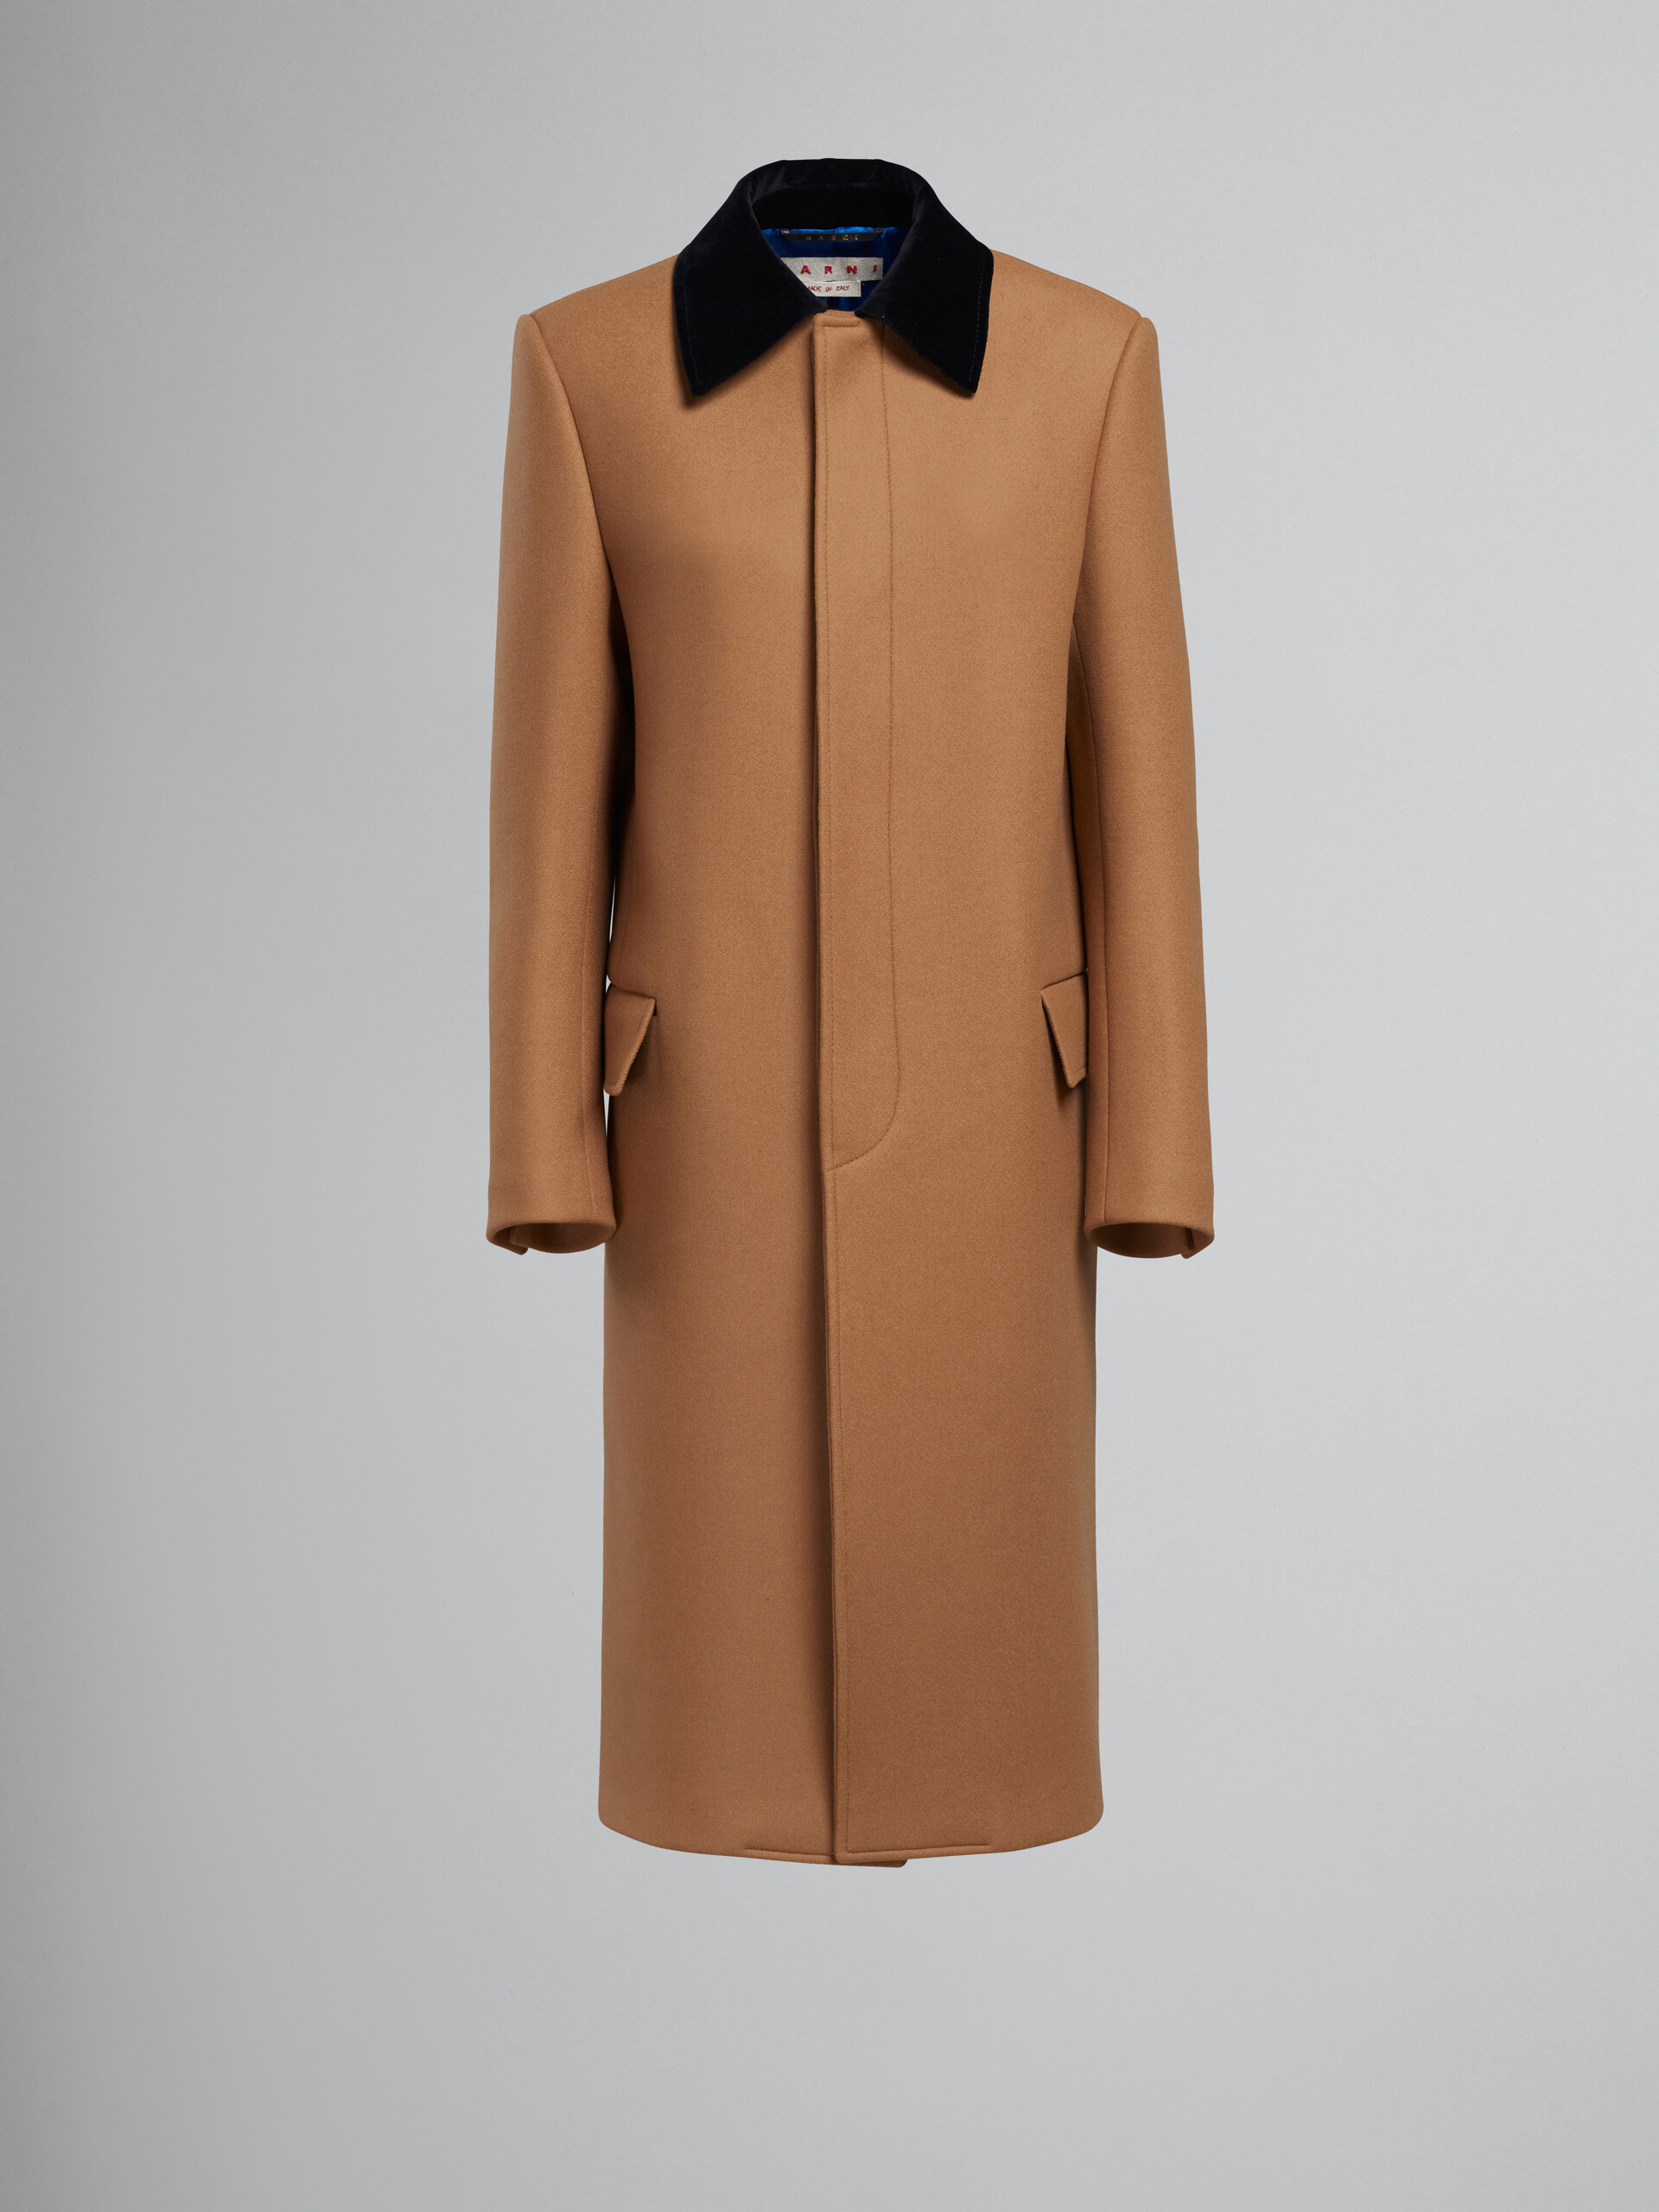 Brown wool coat with velvet collar - Coat - Image 1